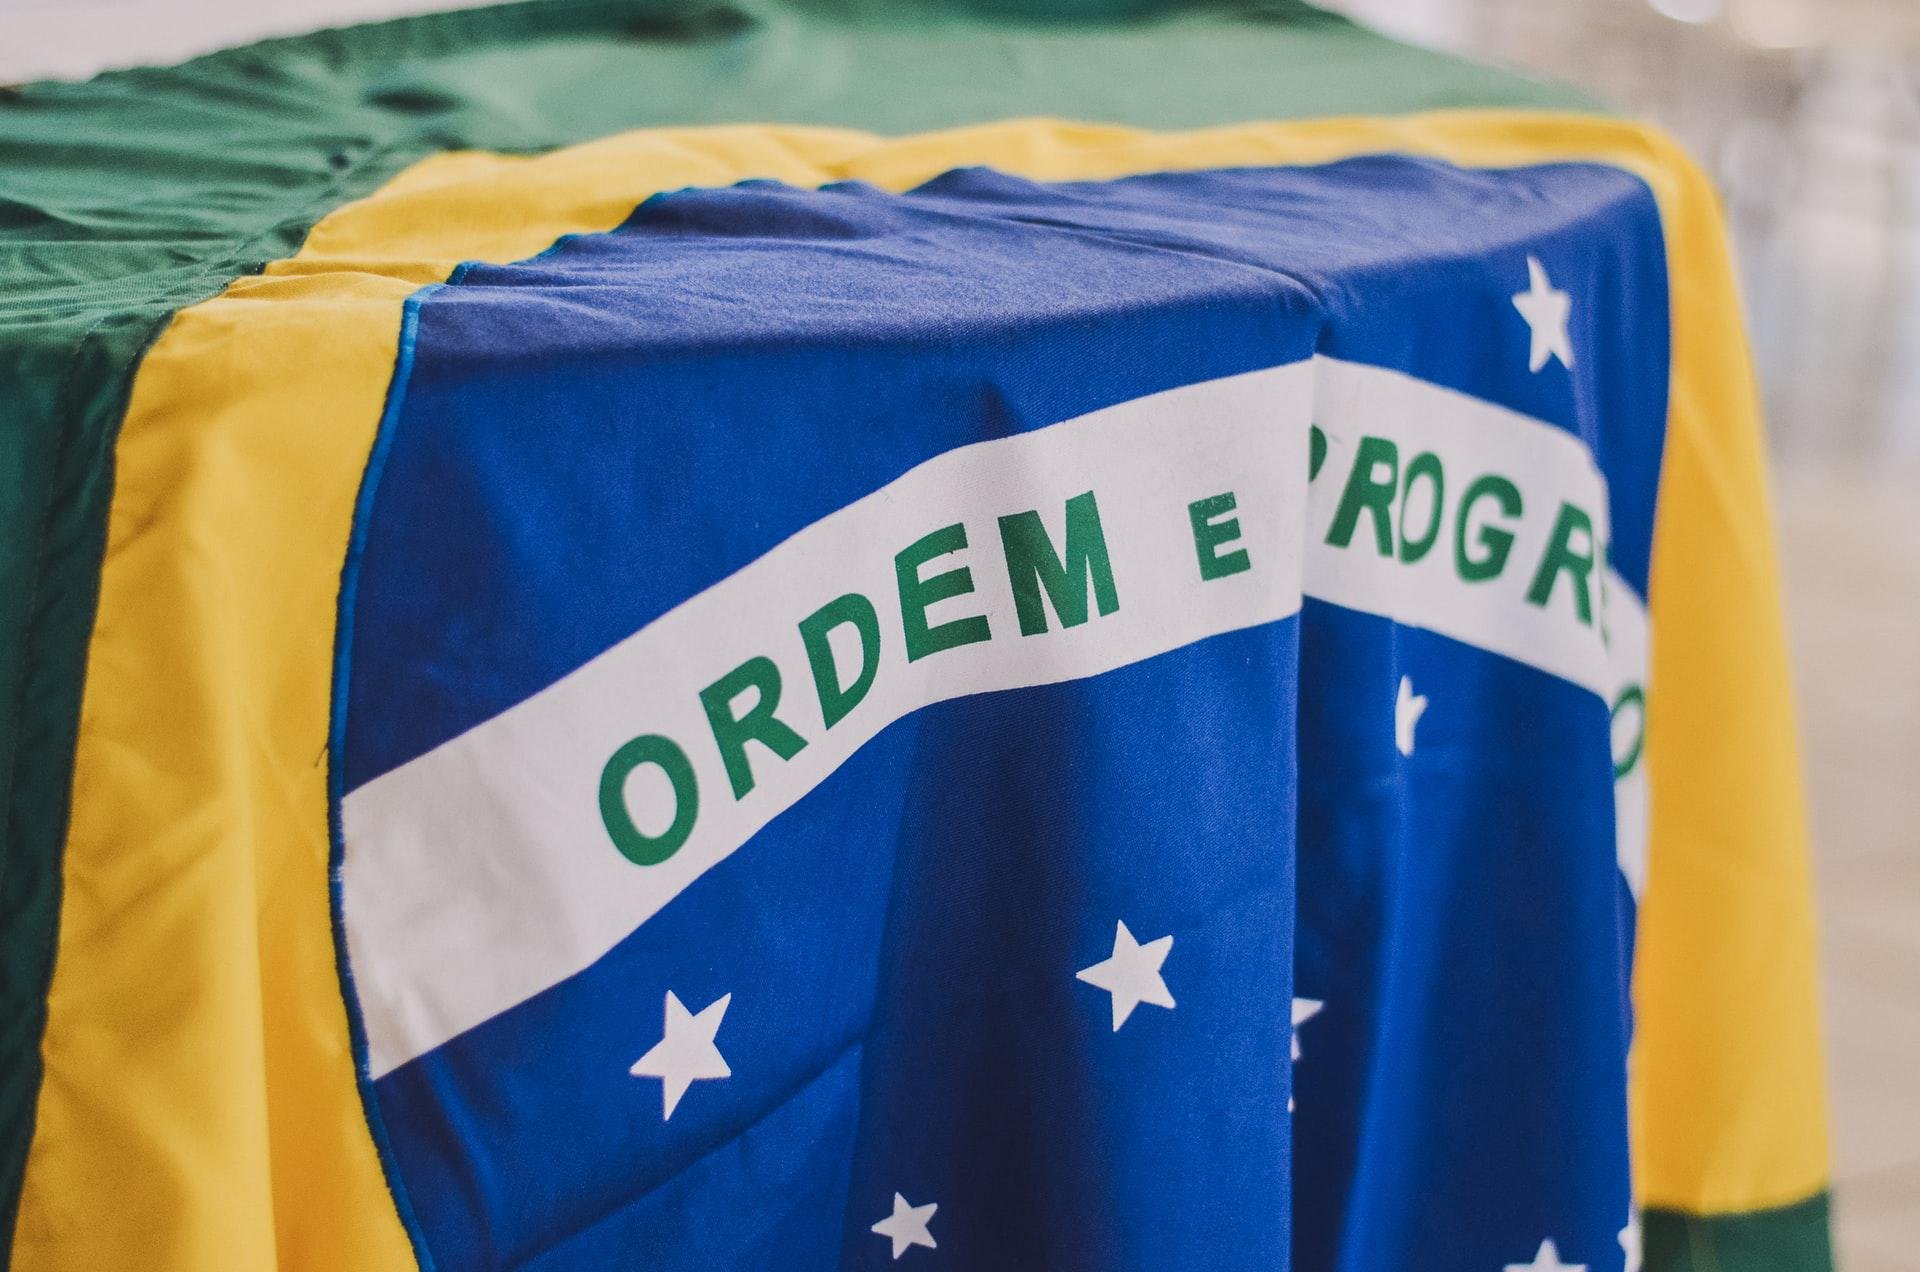 O Cruzeiro do Sul está representado em muitas bandeiras, inclusive na nossa (Fonte: Unplash/Rafaela Biazi)